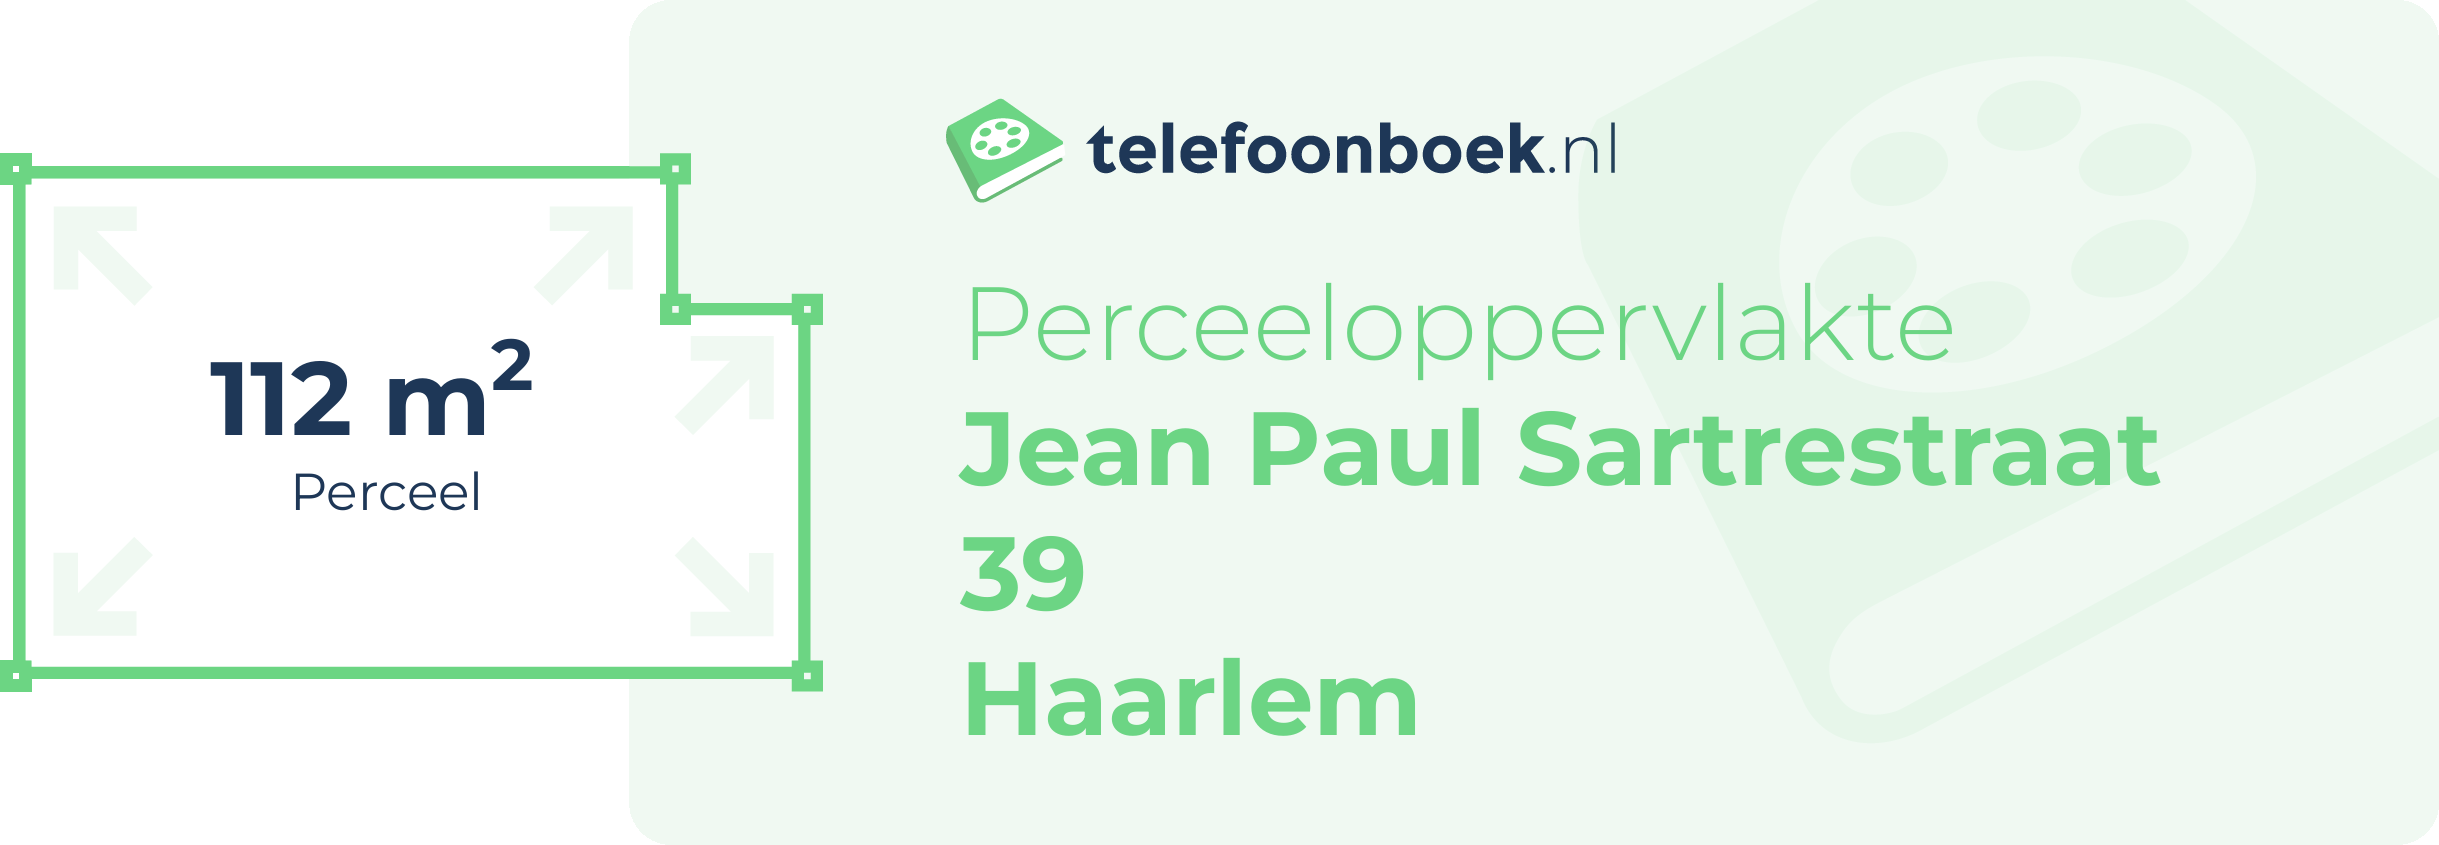 Perceeloppervlakte Jean Paul Sartrestraat 39 Haarlem